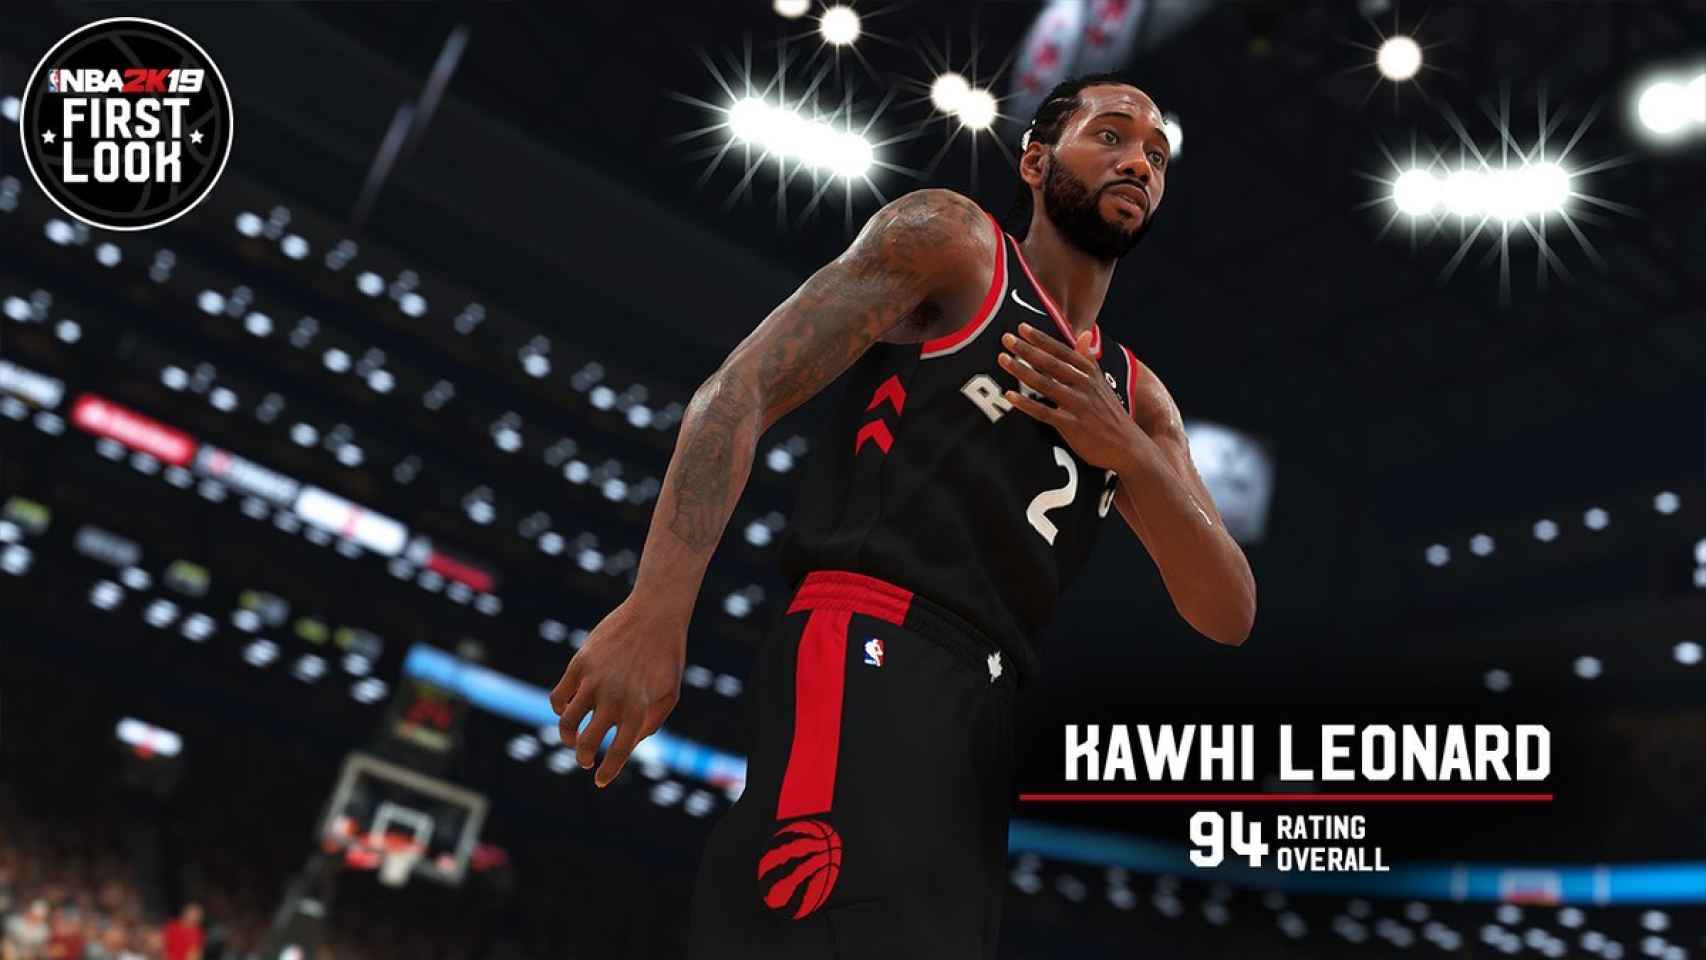 Kawhi Leonard tendrá una media de 94 puntos en el videojuego NBA 2K19. Foto: Twitter (@NBA2K)